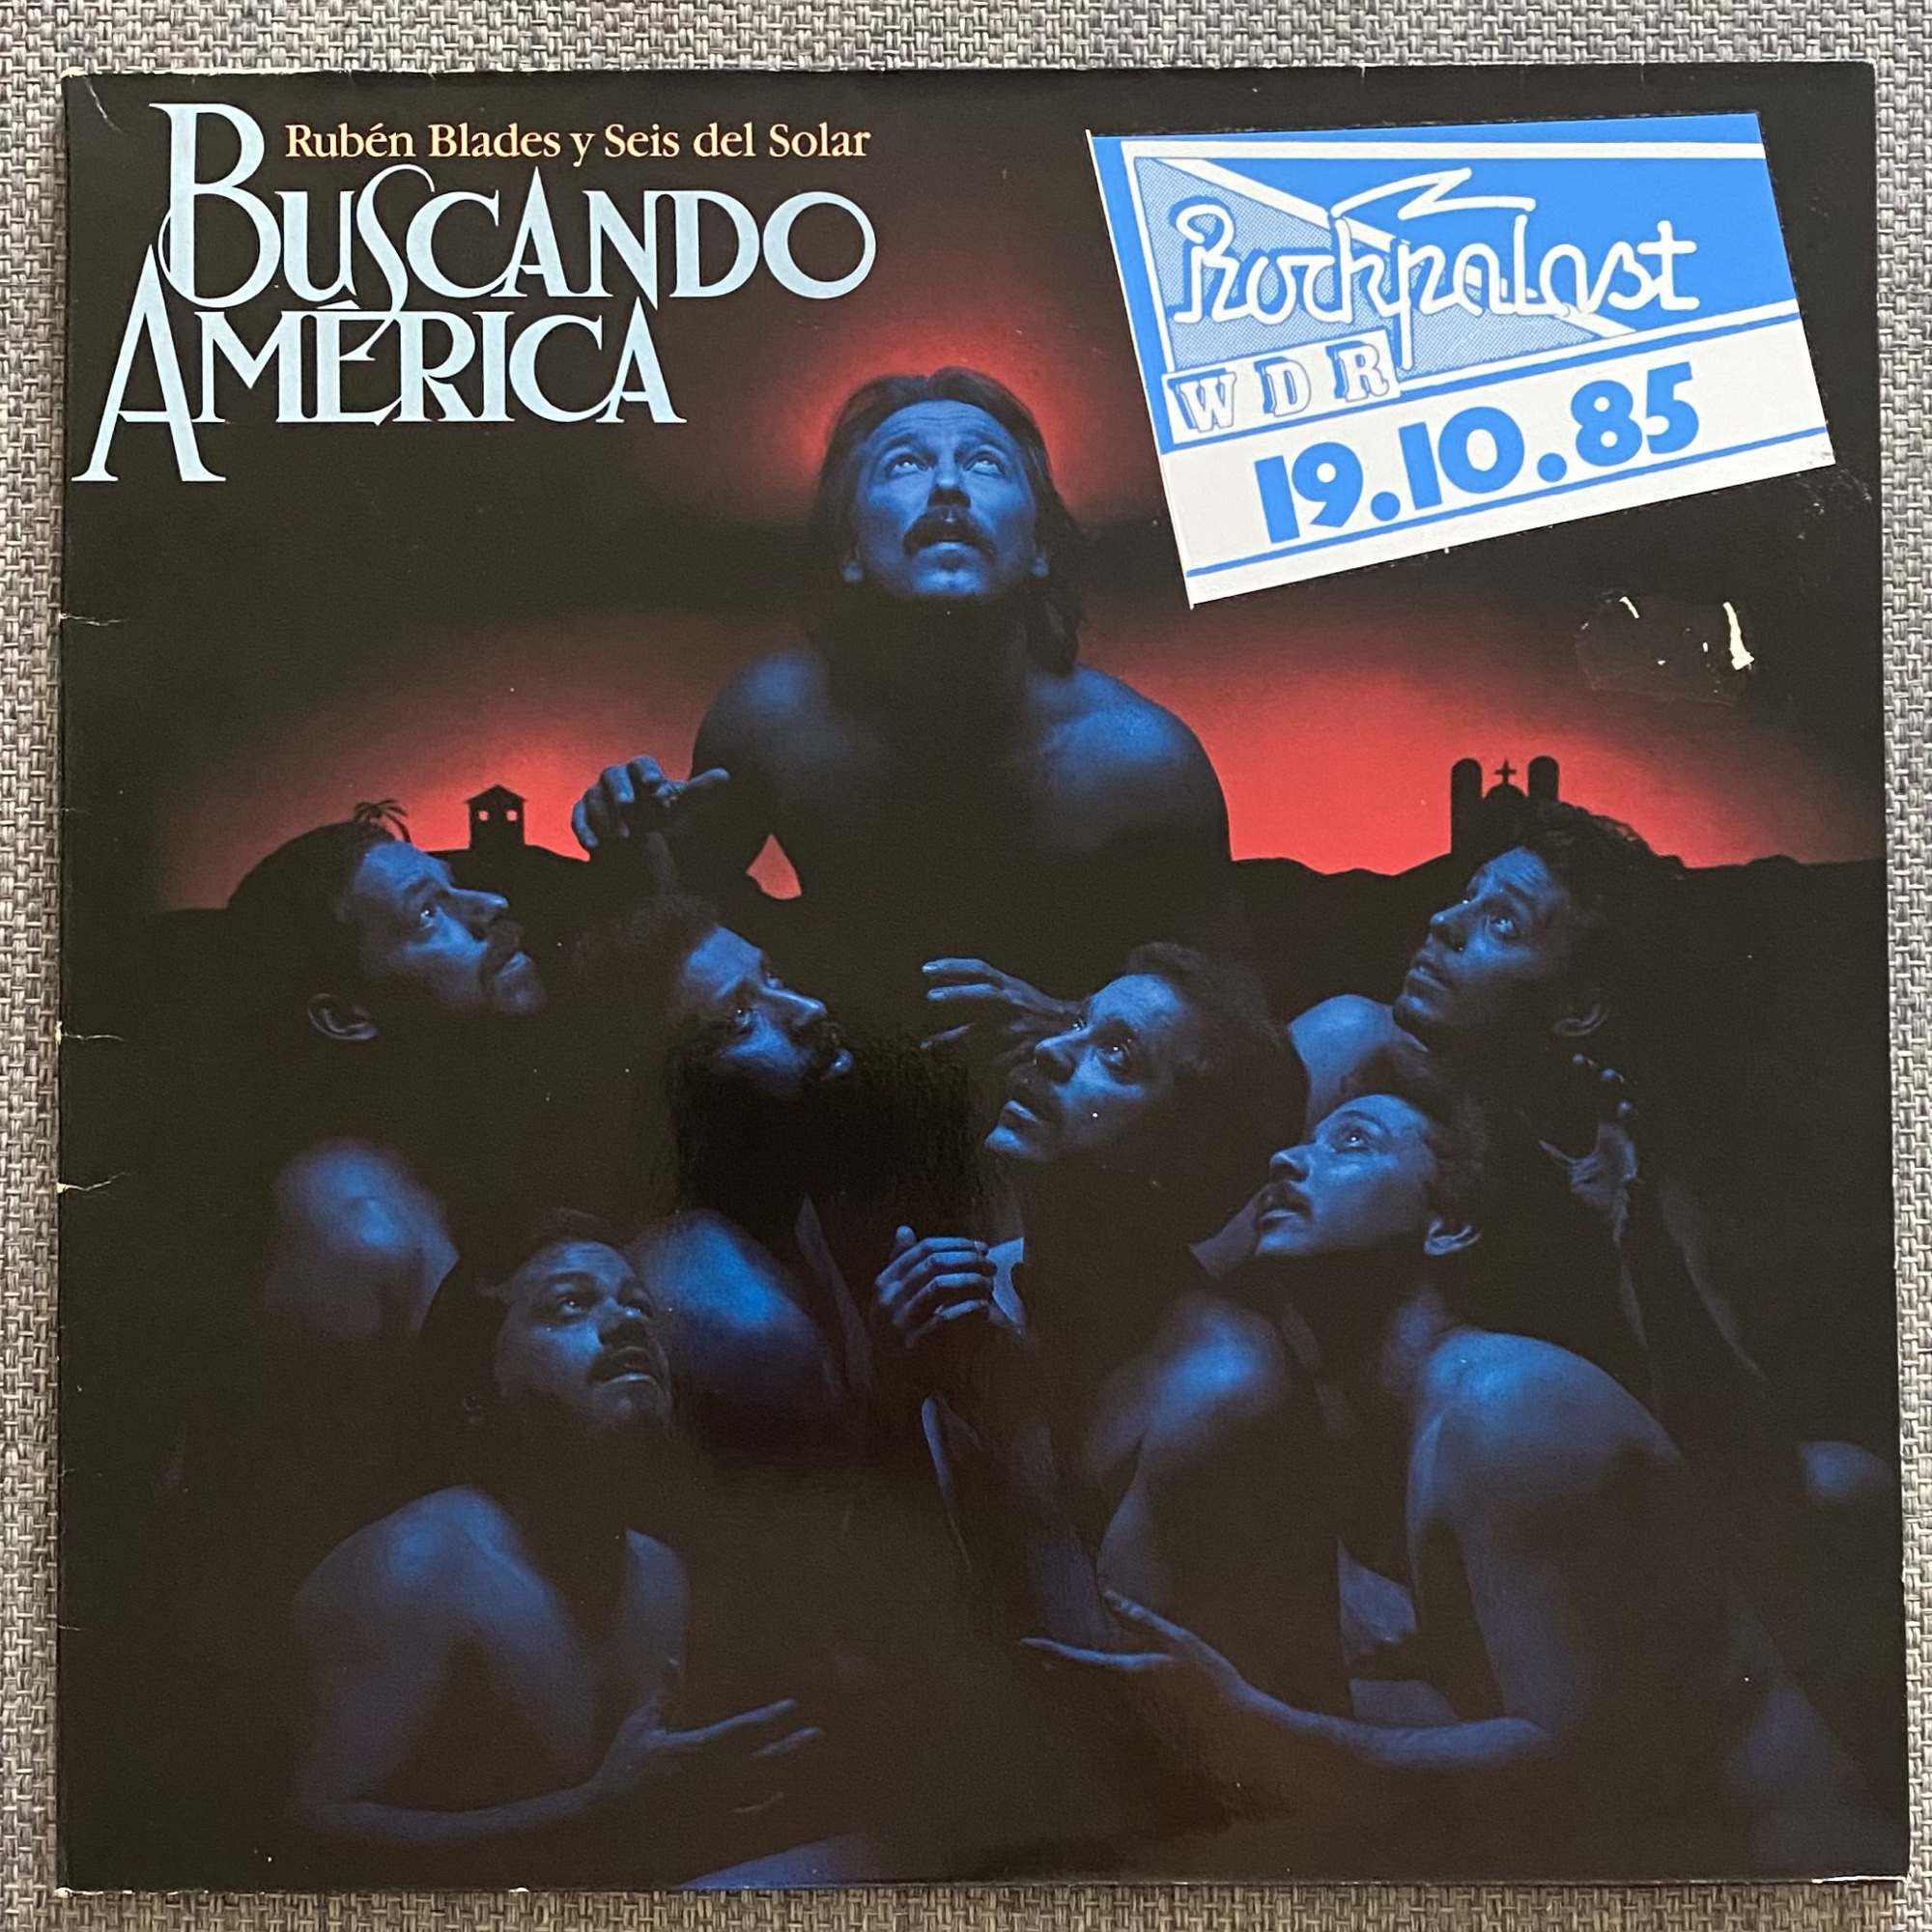  Breakfast In America - 4pr: CDs y Vinilo